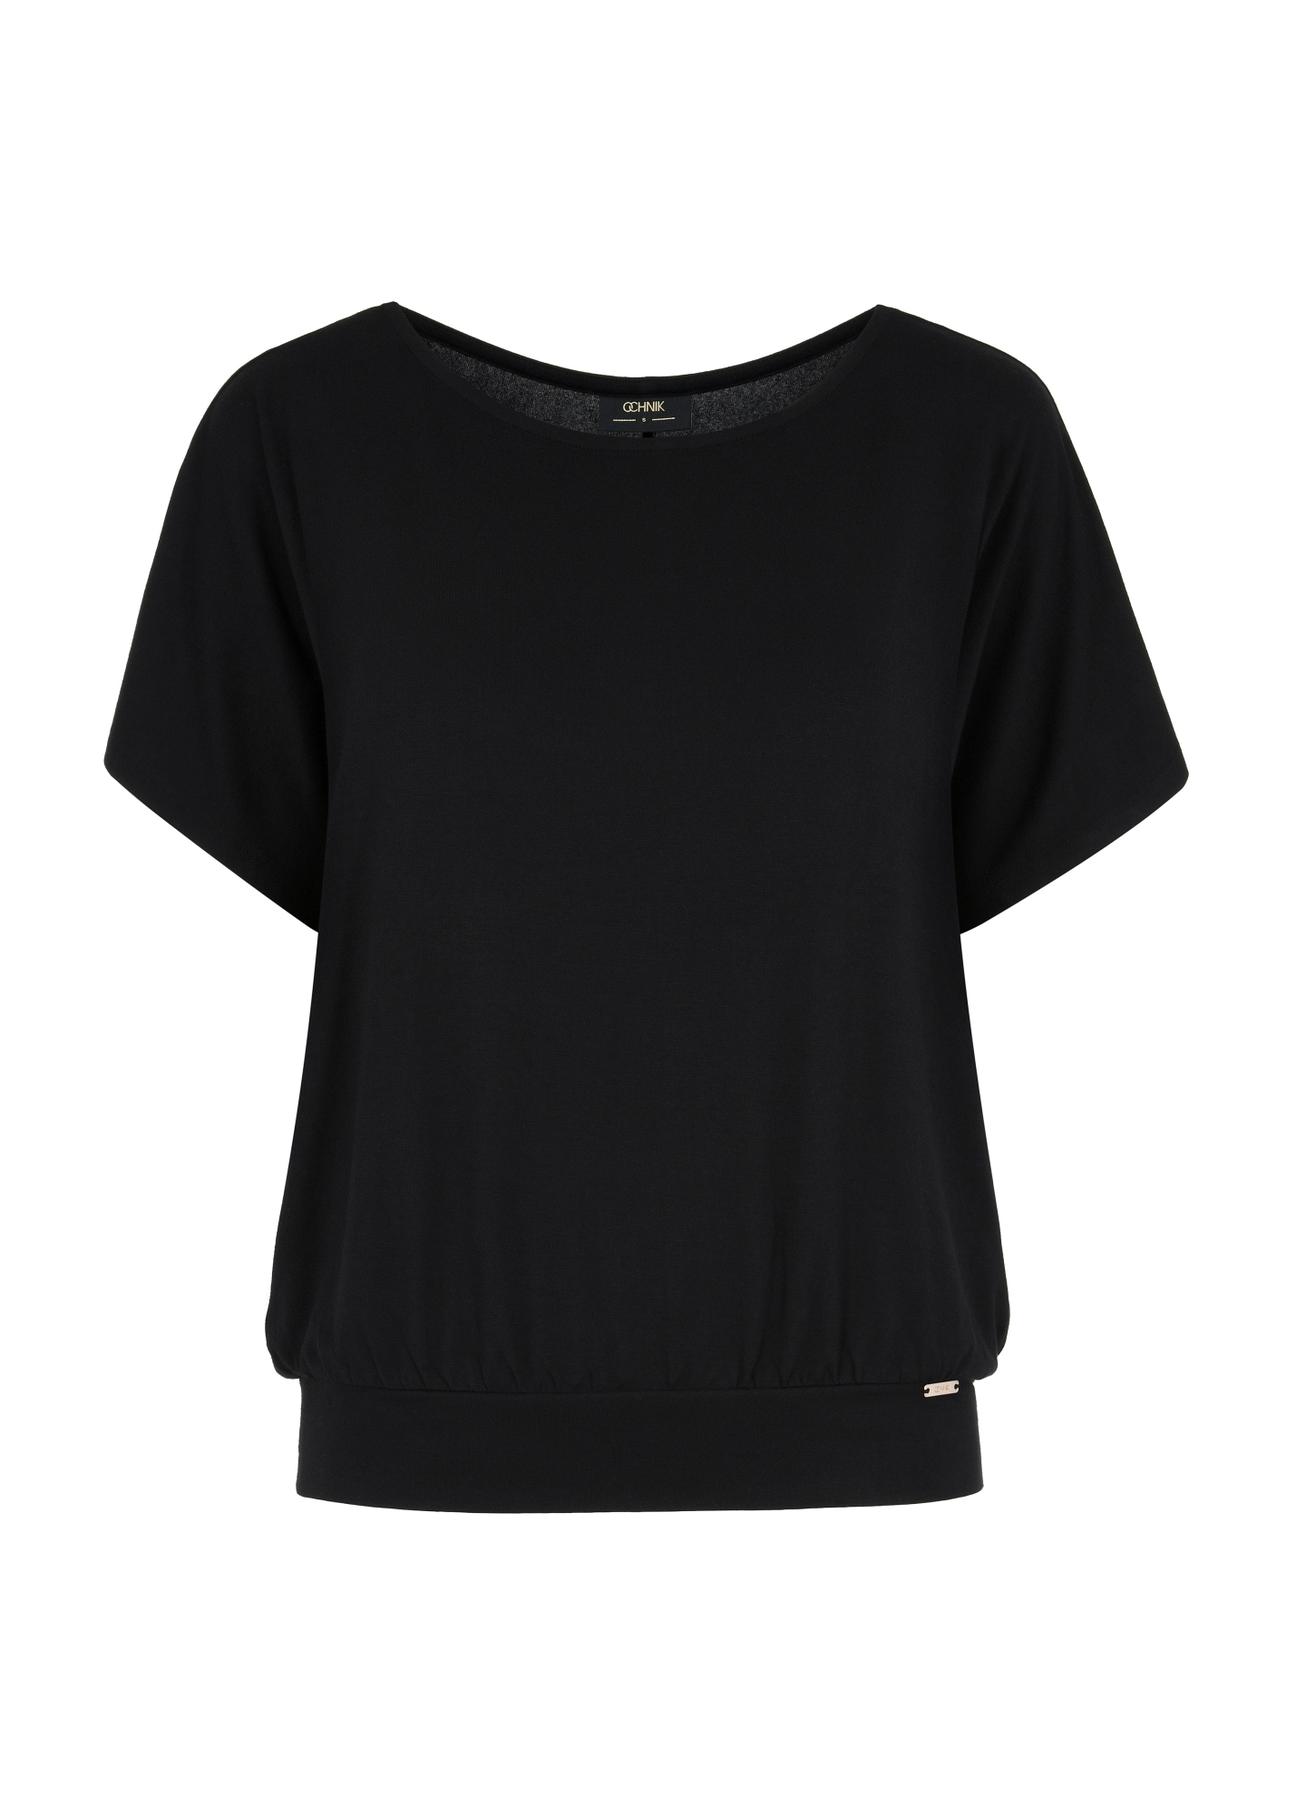 Czarna bluzka ze ściągaczem damska BLUDT-0170-99(W24)